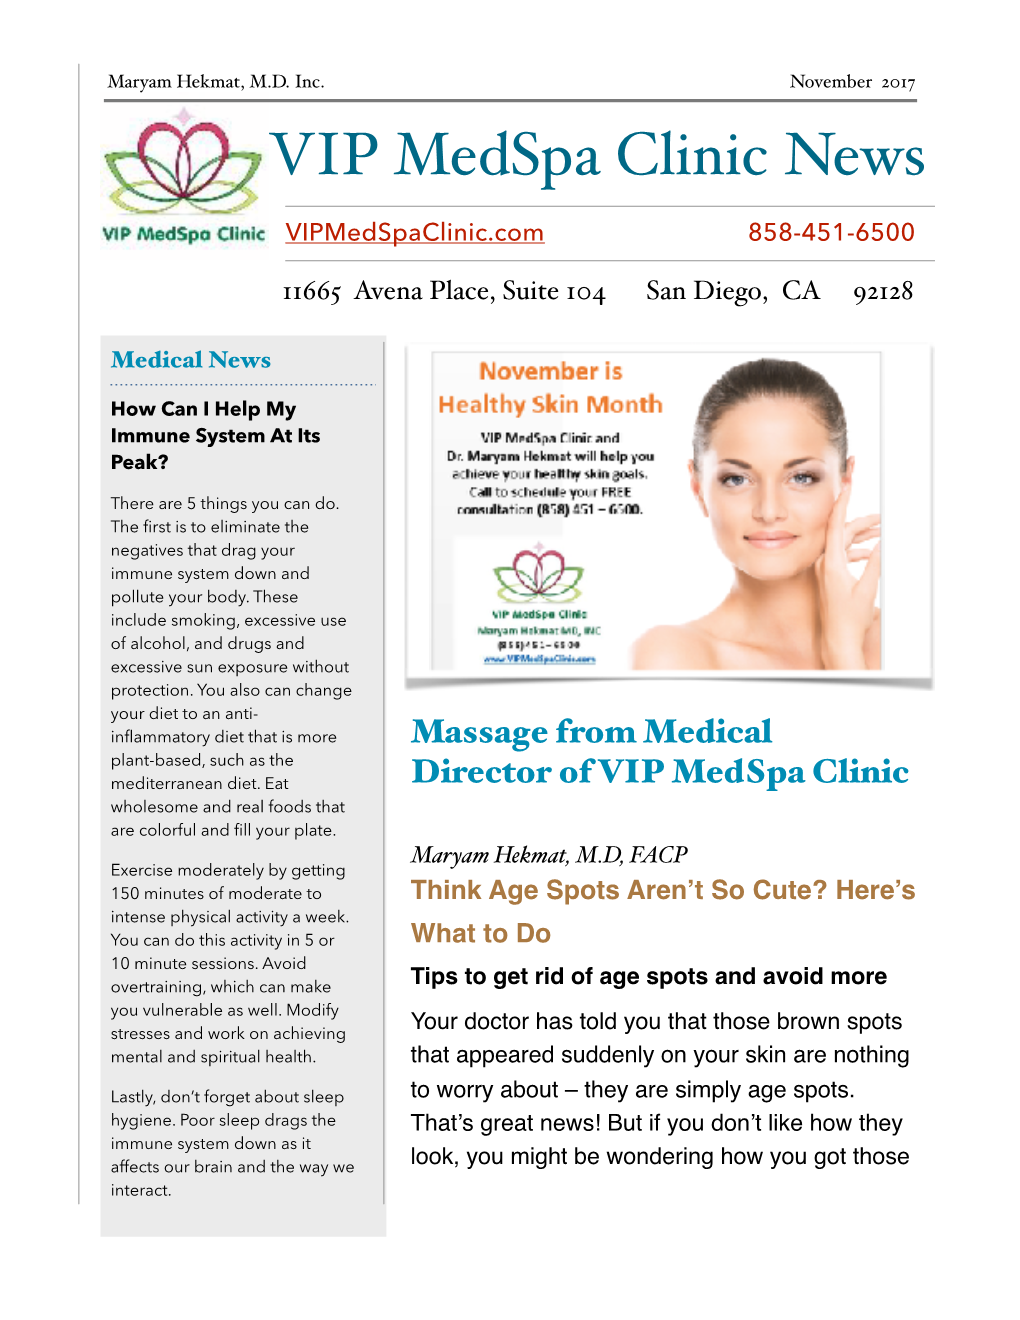 November 2017 VIP Medspa Clinic News